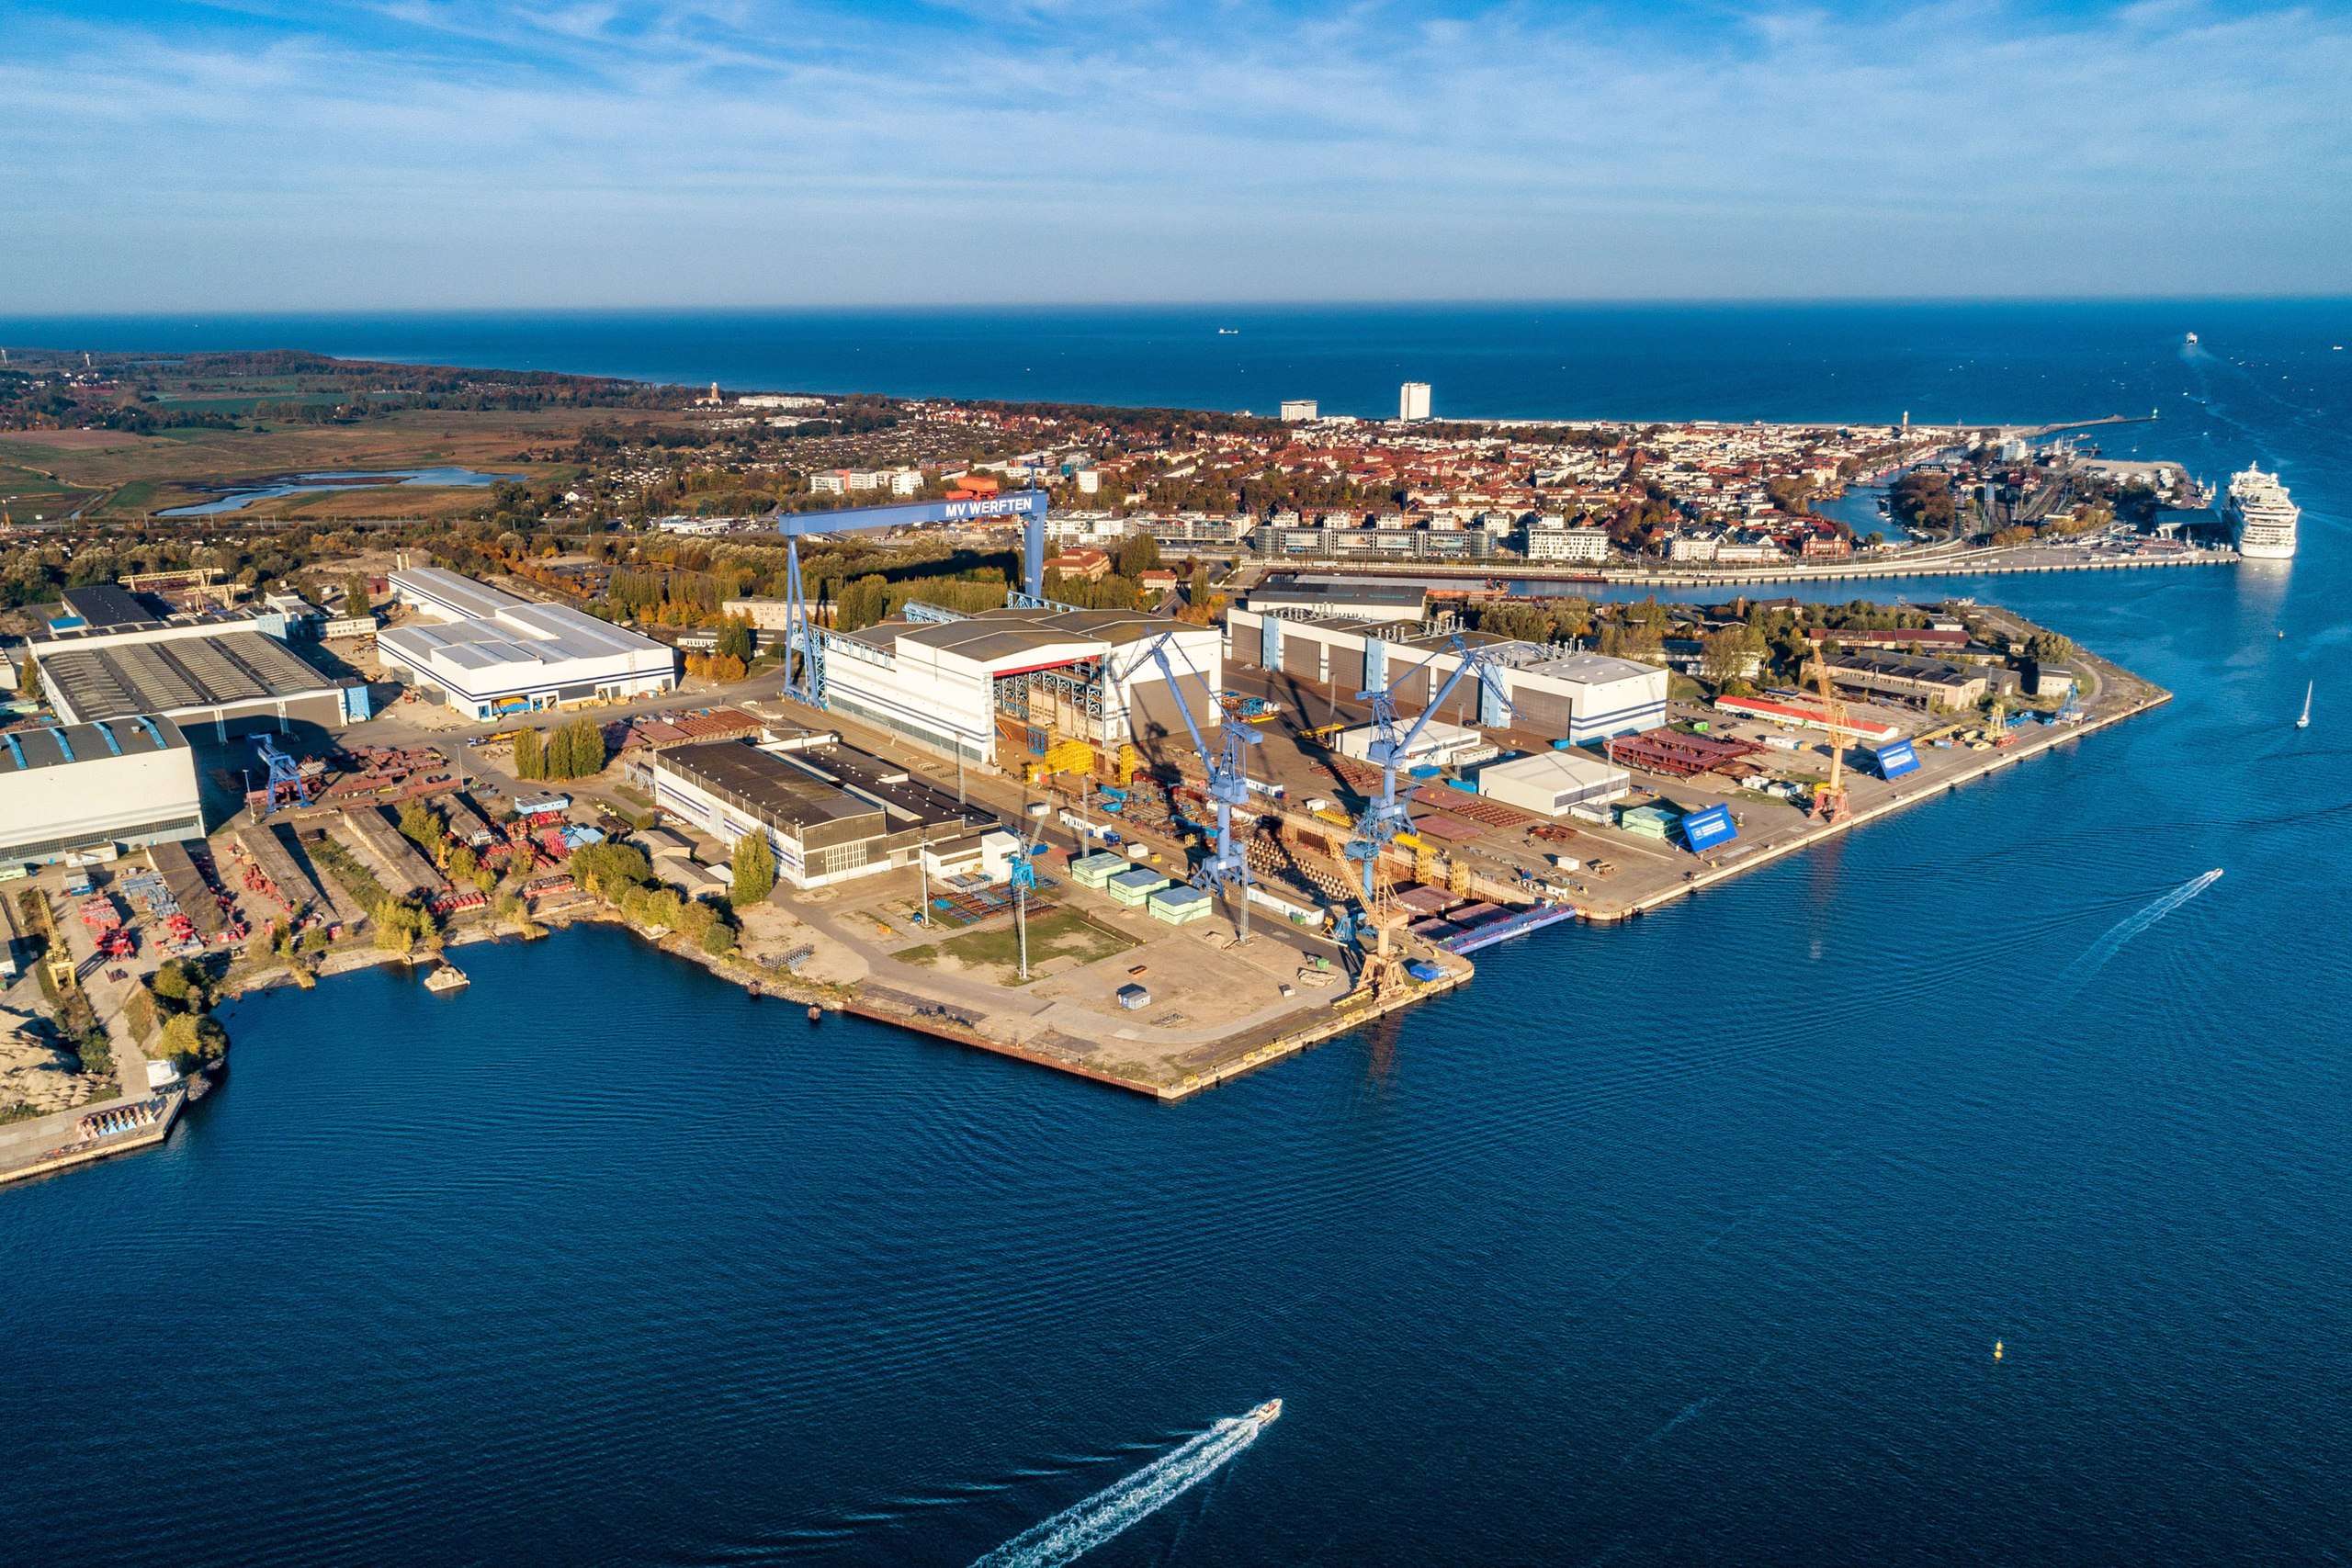 Luftaufnahme der ehemaligen MV Werften in in Rostock-Warnemünde. Seit 2022 gehört die Werft dem Bund und wird seither als Außenstelle des Marinearsenals unter dem Namen Warnowwerft geführt.